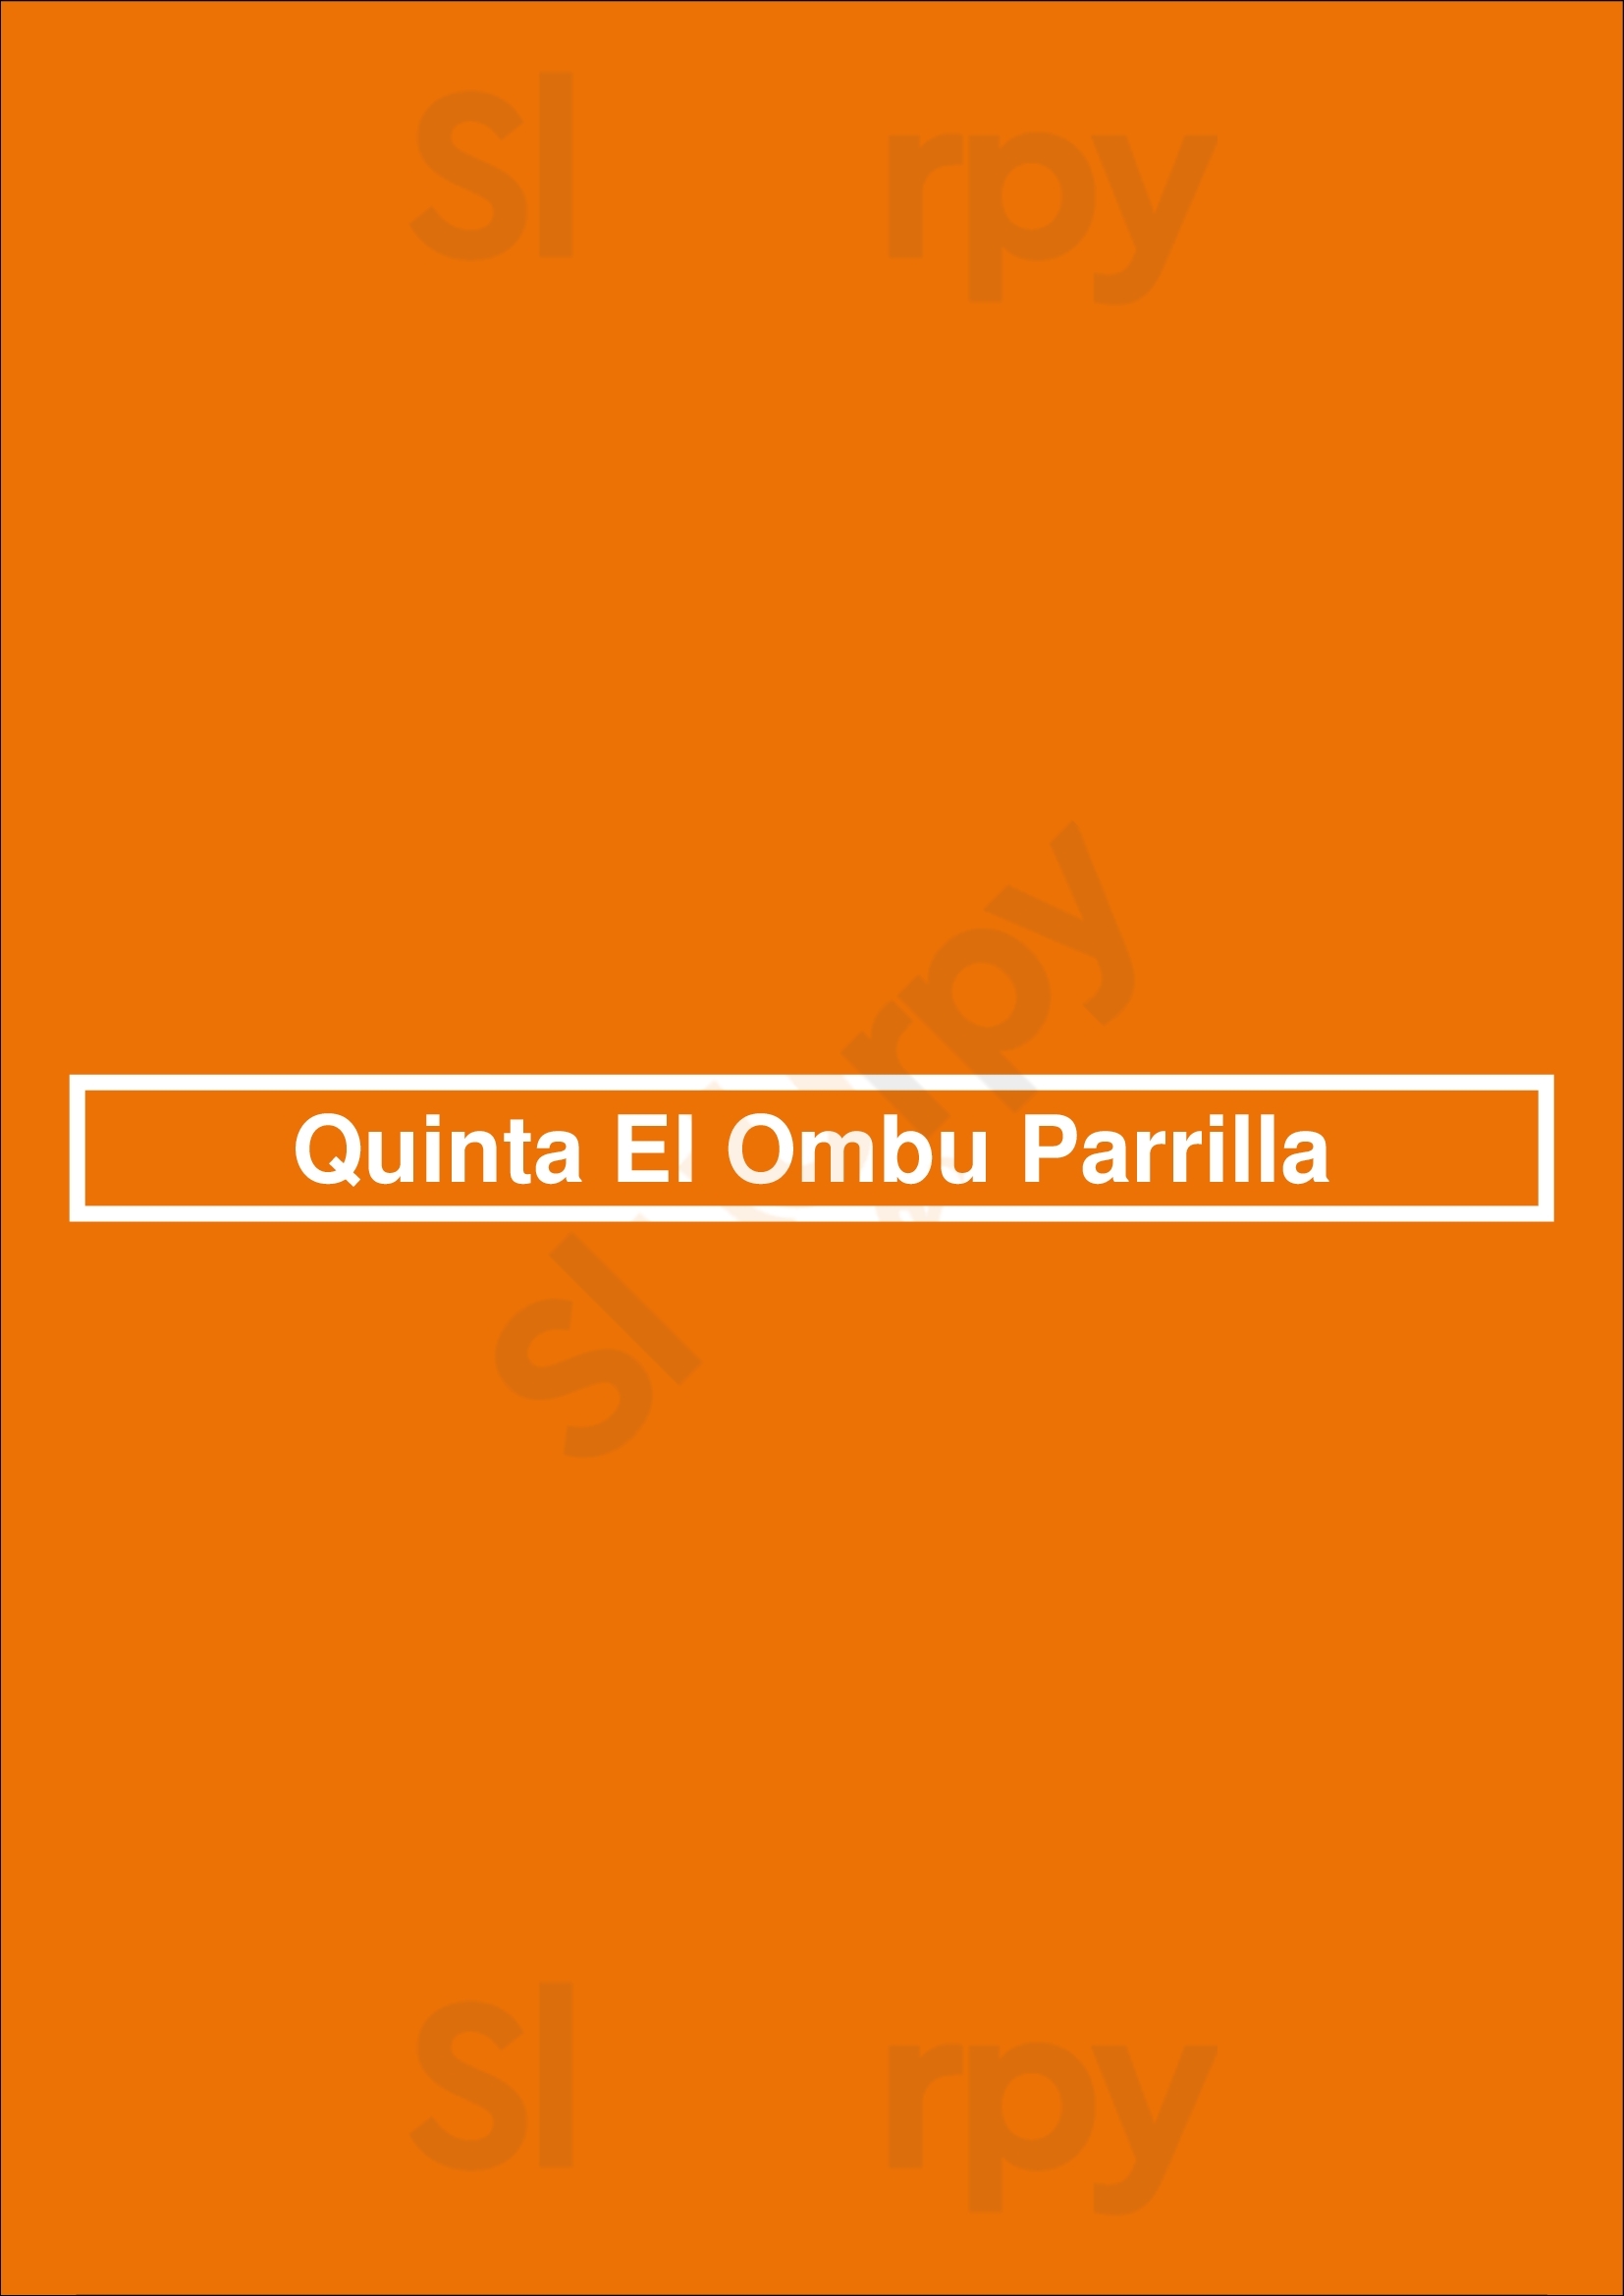 Quinta El Ombu Parrilla Buenos Aires Menu - 1